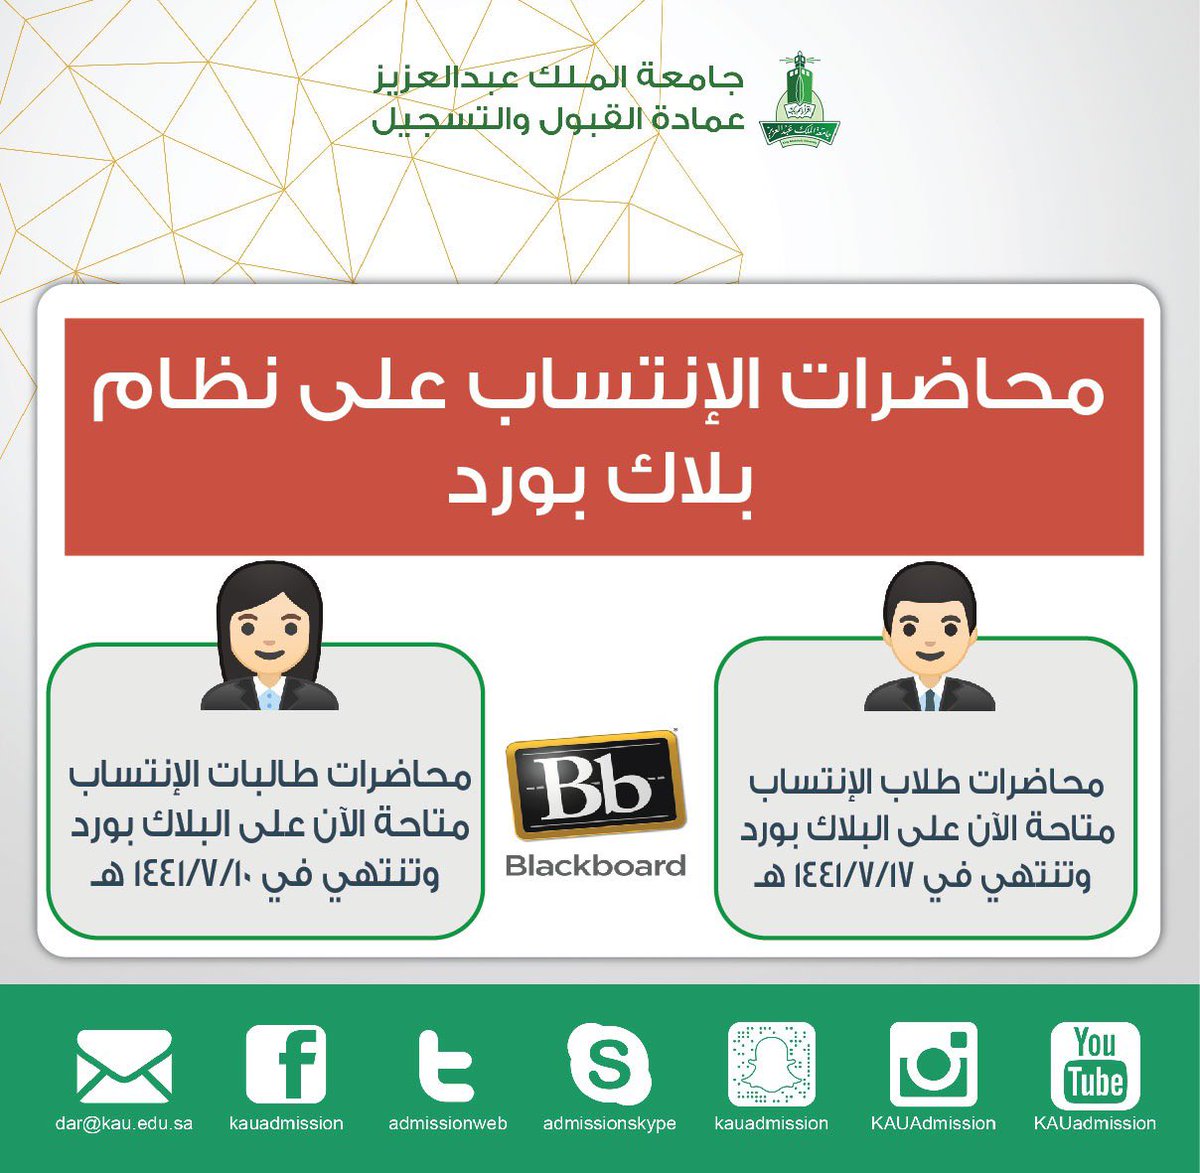 والتسجيل عمادة جامعة الملك عبد العزيز القبول جامعة الملك